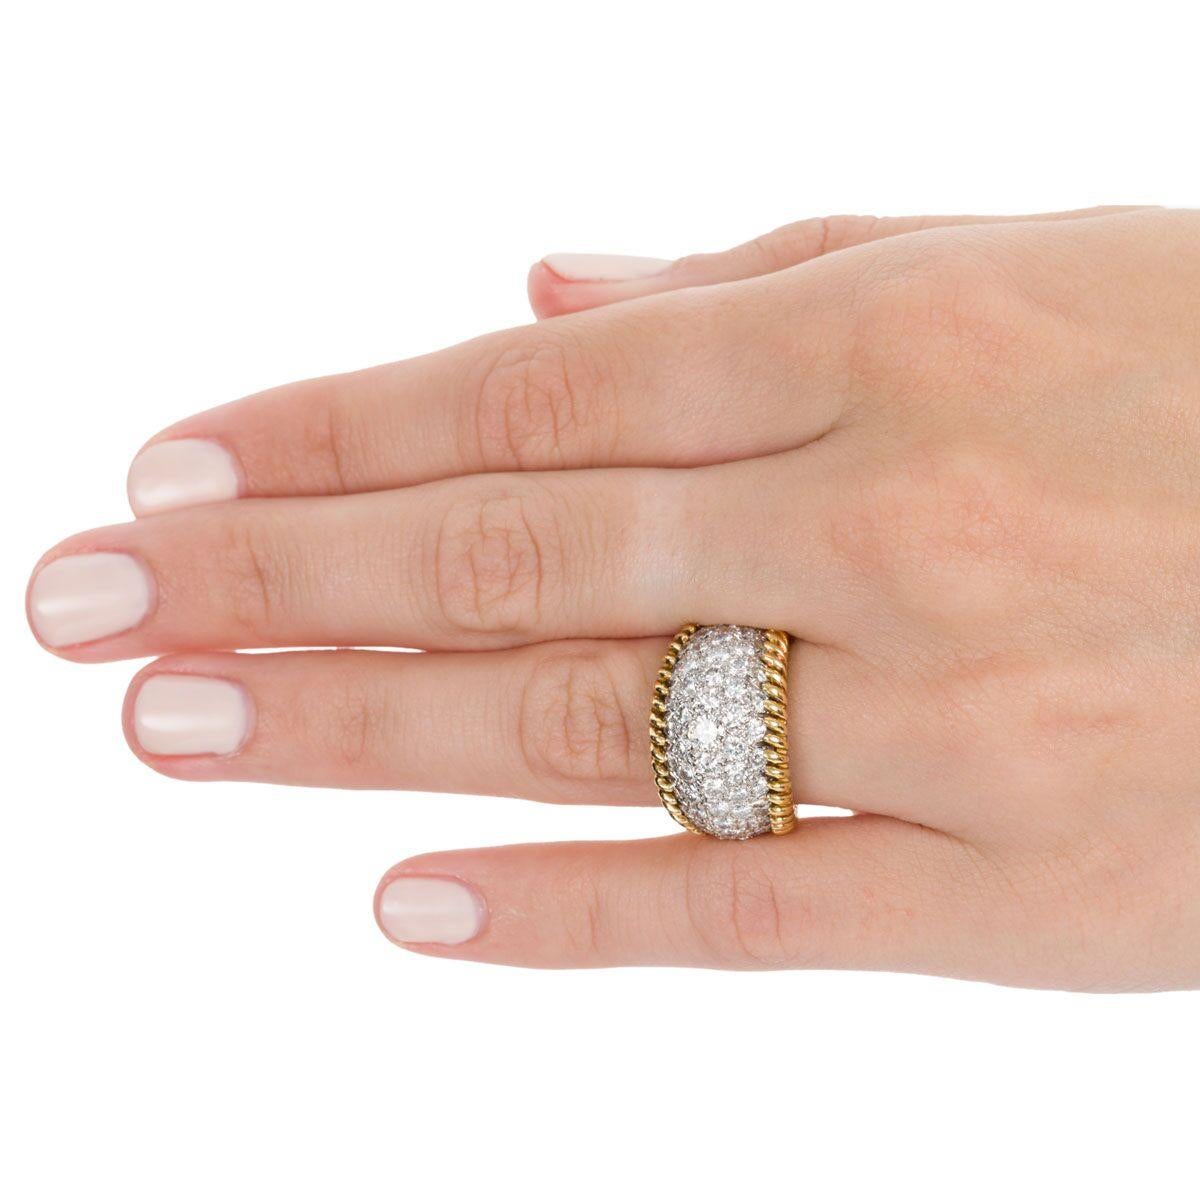 3.00 Carat Diamond Pave Set & 18 Karat Yellow Gold Ring - Ring Size 5.5 5